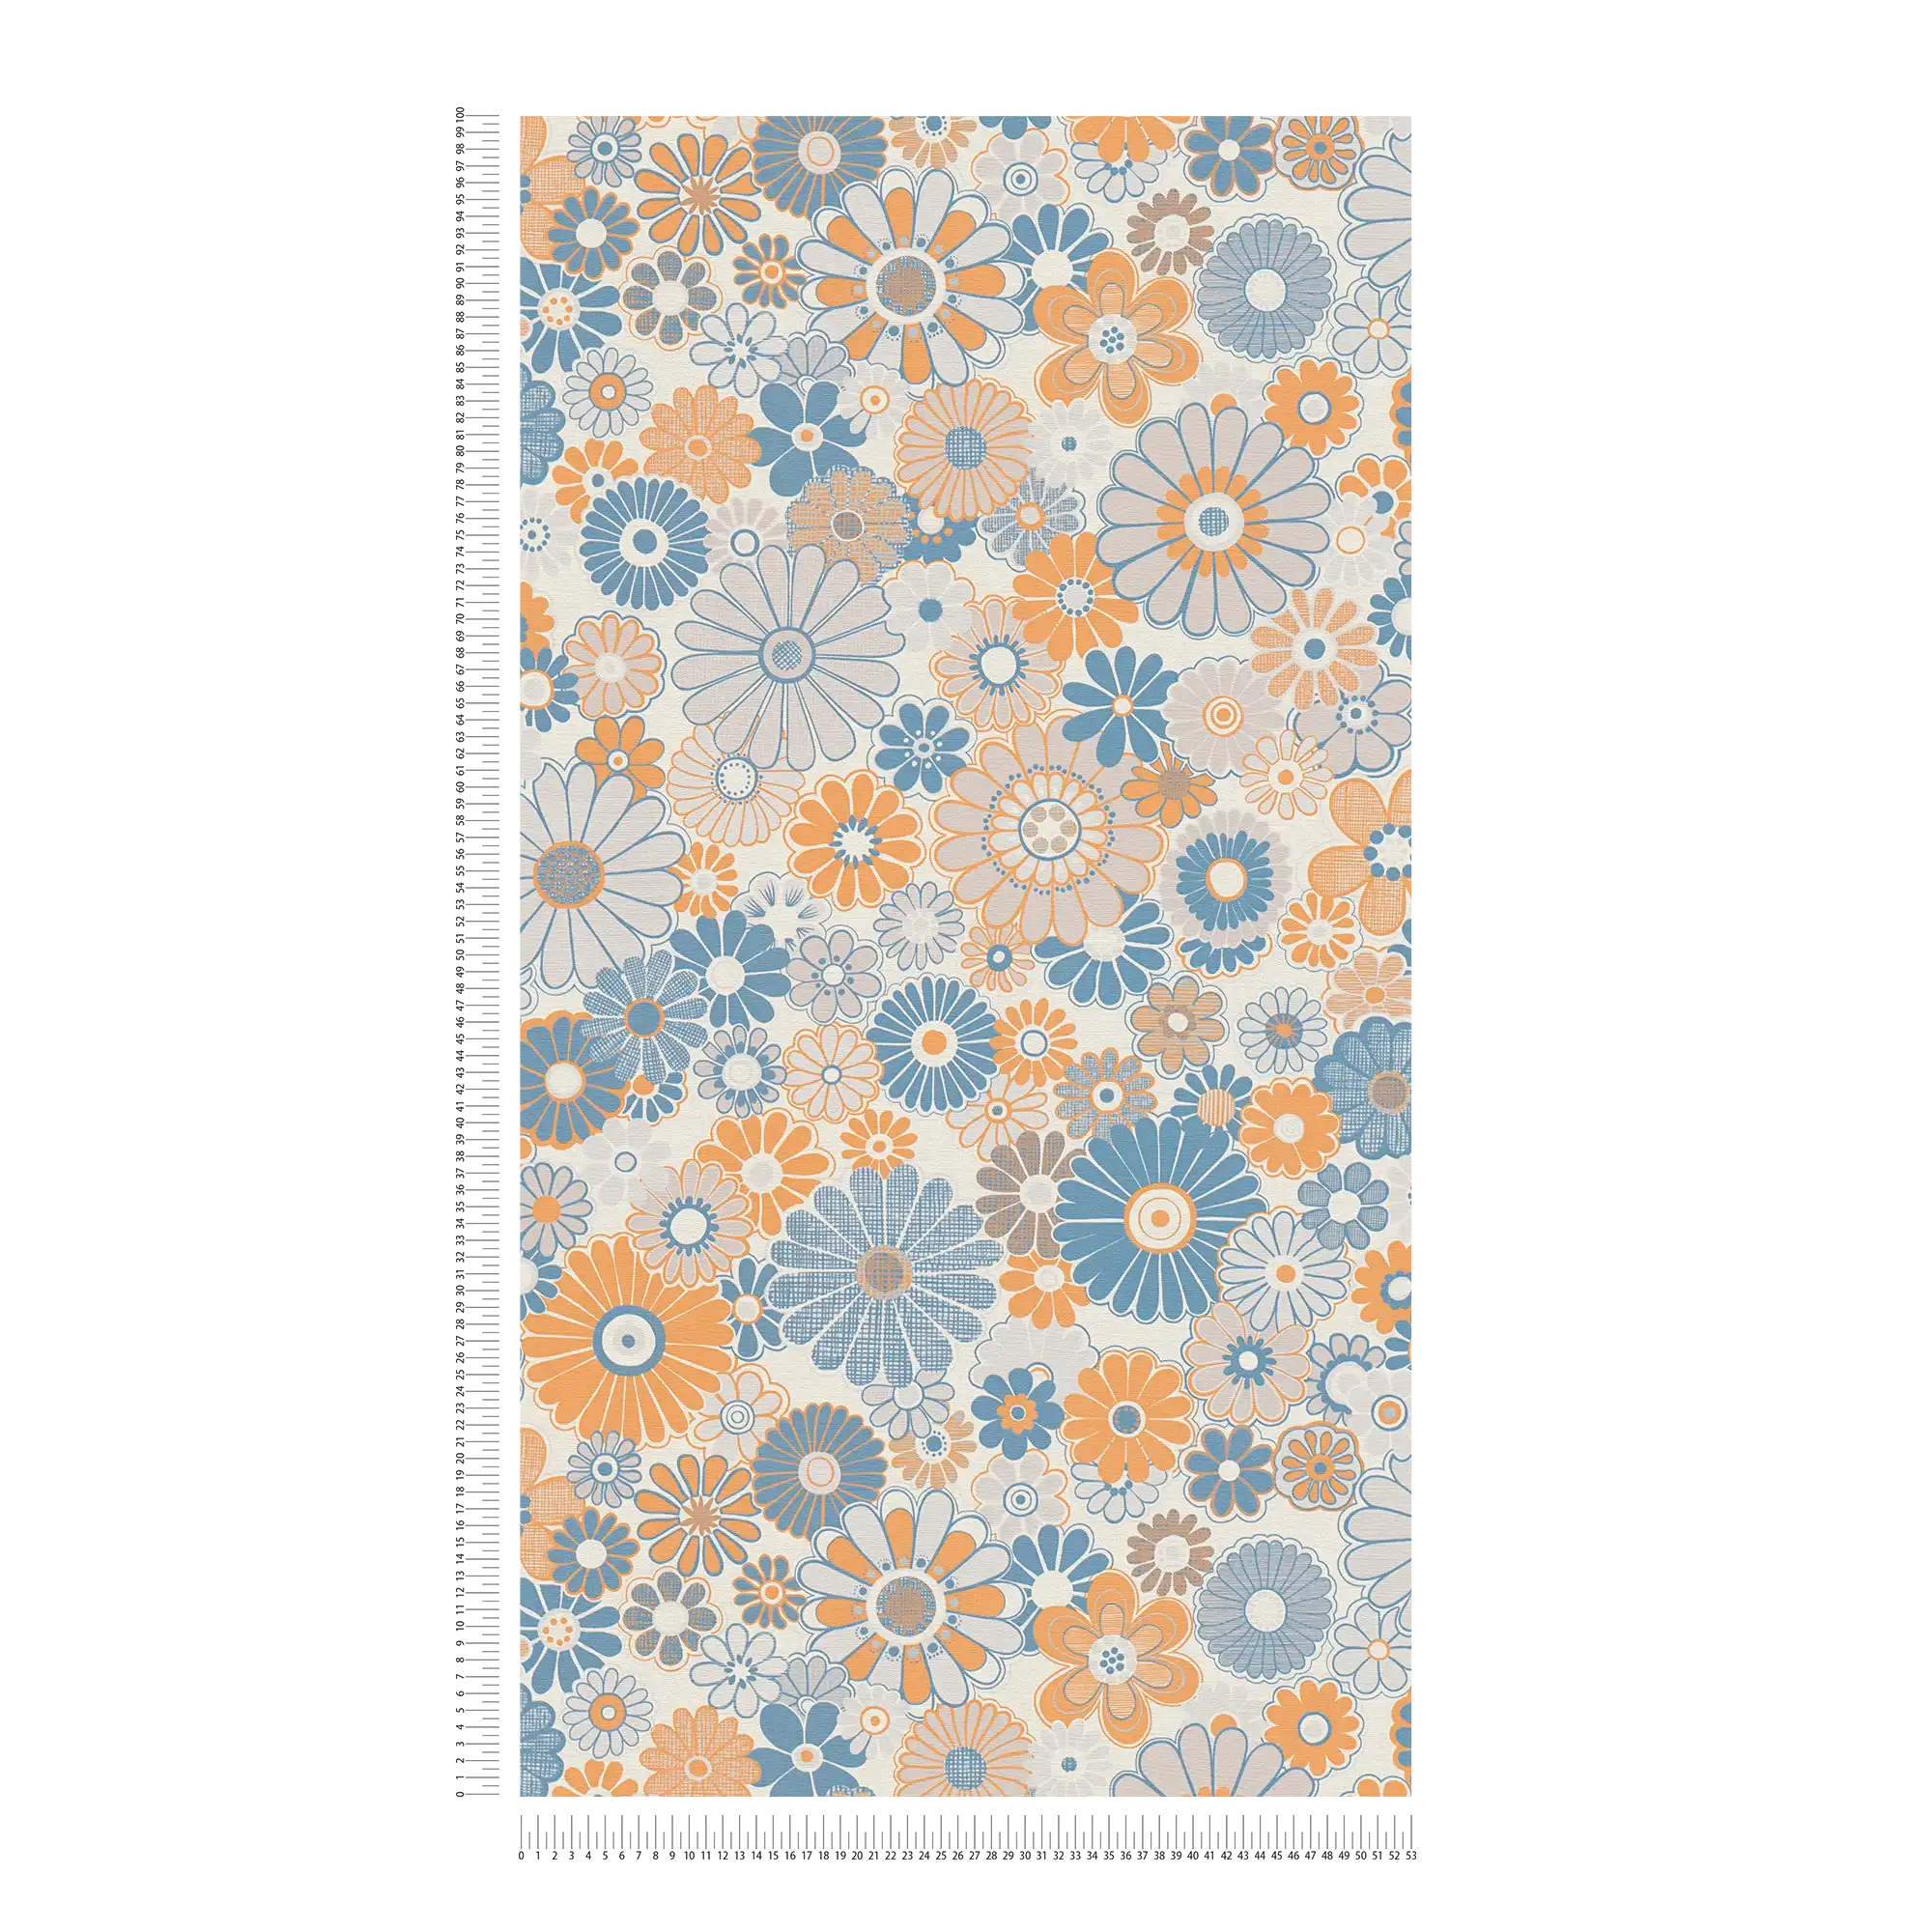             Papel pintado no tejido con motivos florales en estilo retro - azul, naranja, gris
        